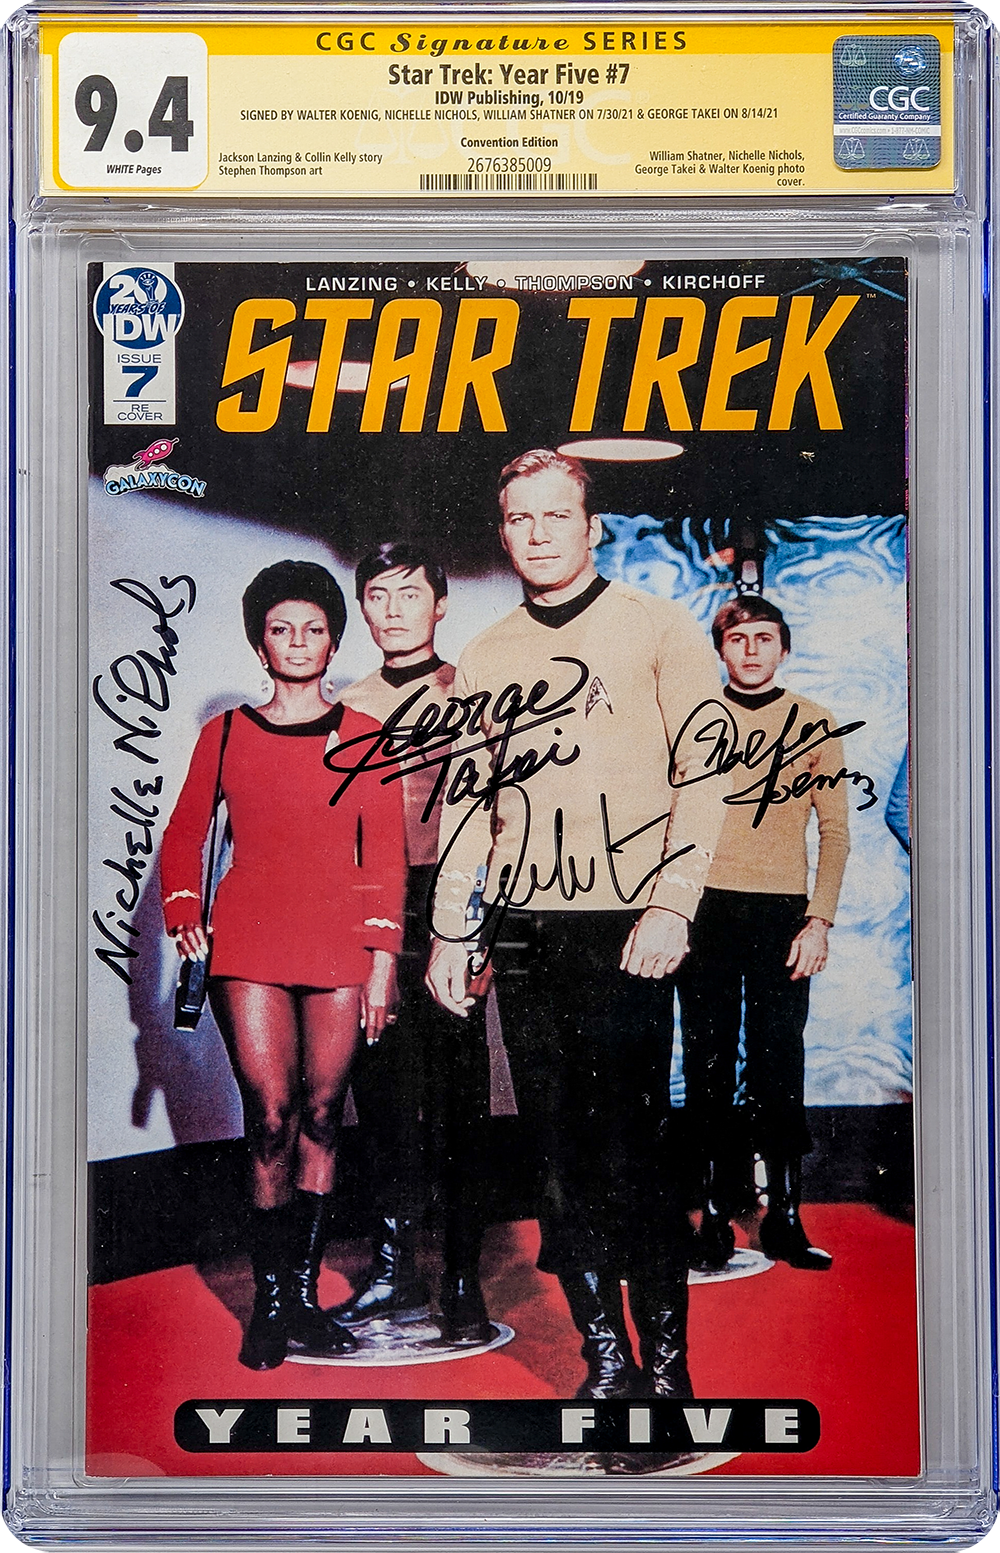 Star Trek Year Five #7 IDW CGC Signature Series 9.4 Cast x4 Signed Koenig, Shatner, Nichols, Takei